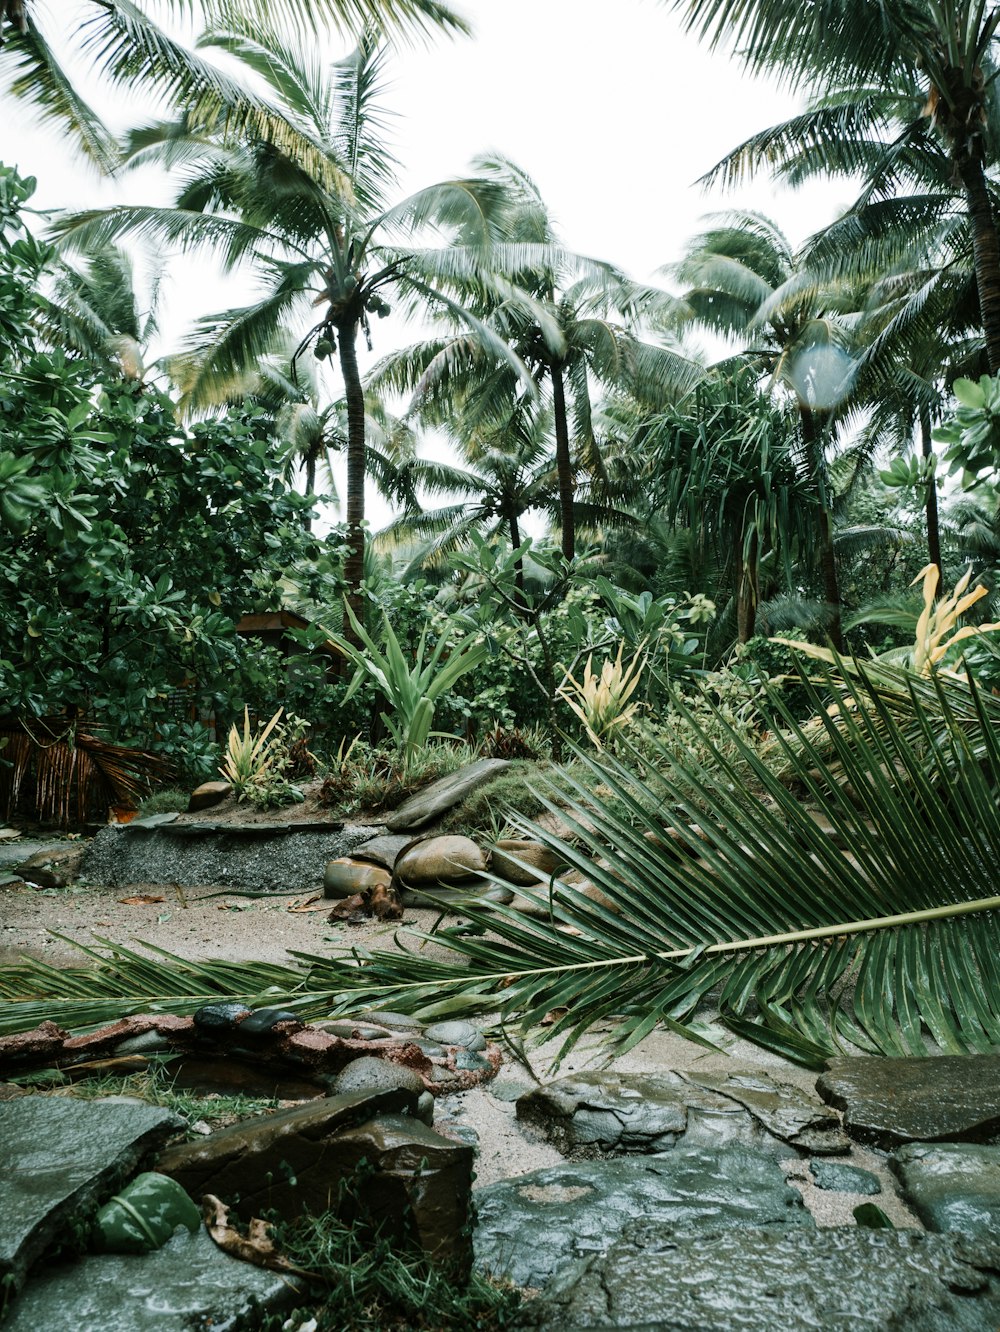 갈색 토양에 녹색 코코넛 야자수